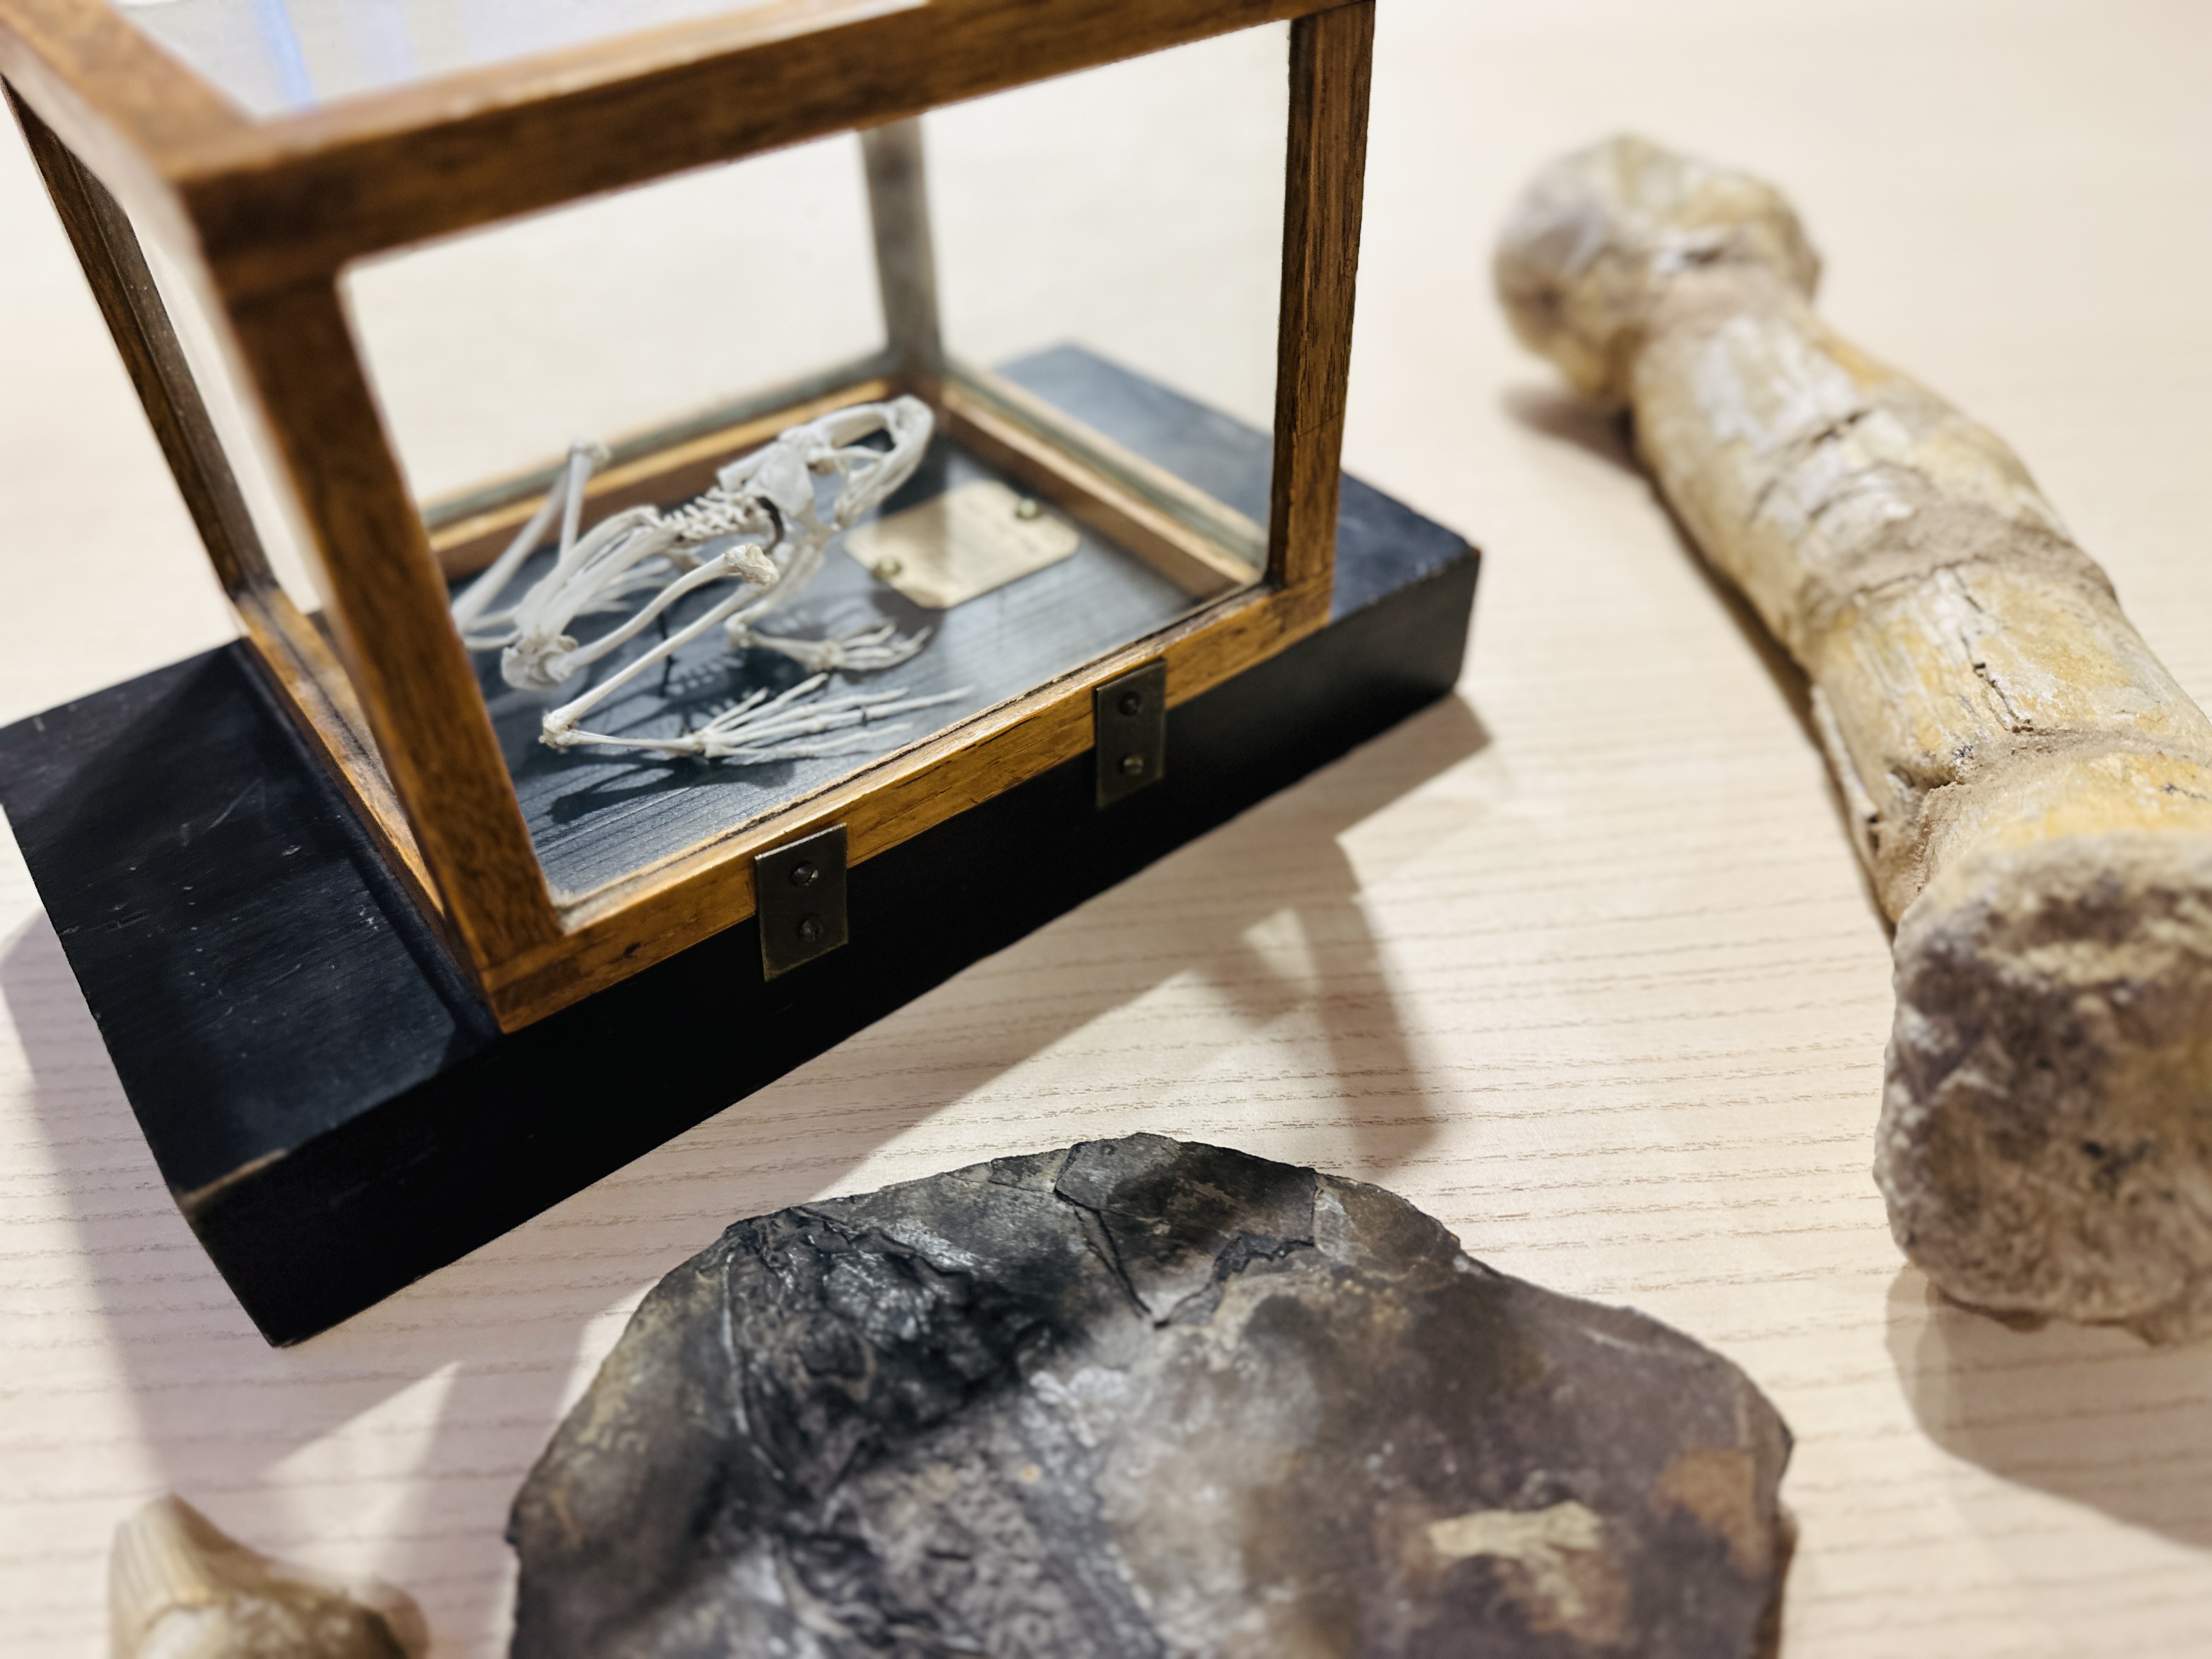 Grodskelett, dinosaurieben och fossil utplacerade på ett bord. Foto. 